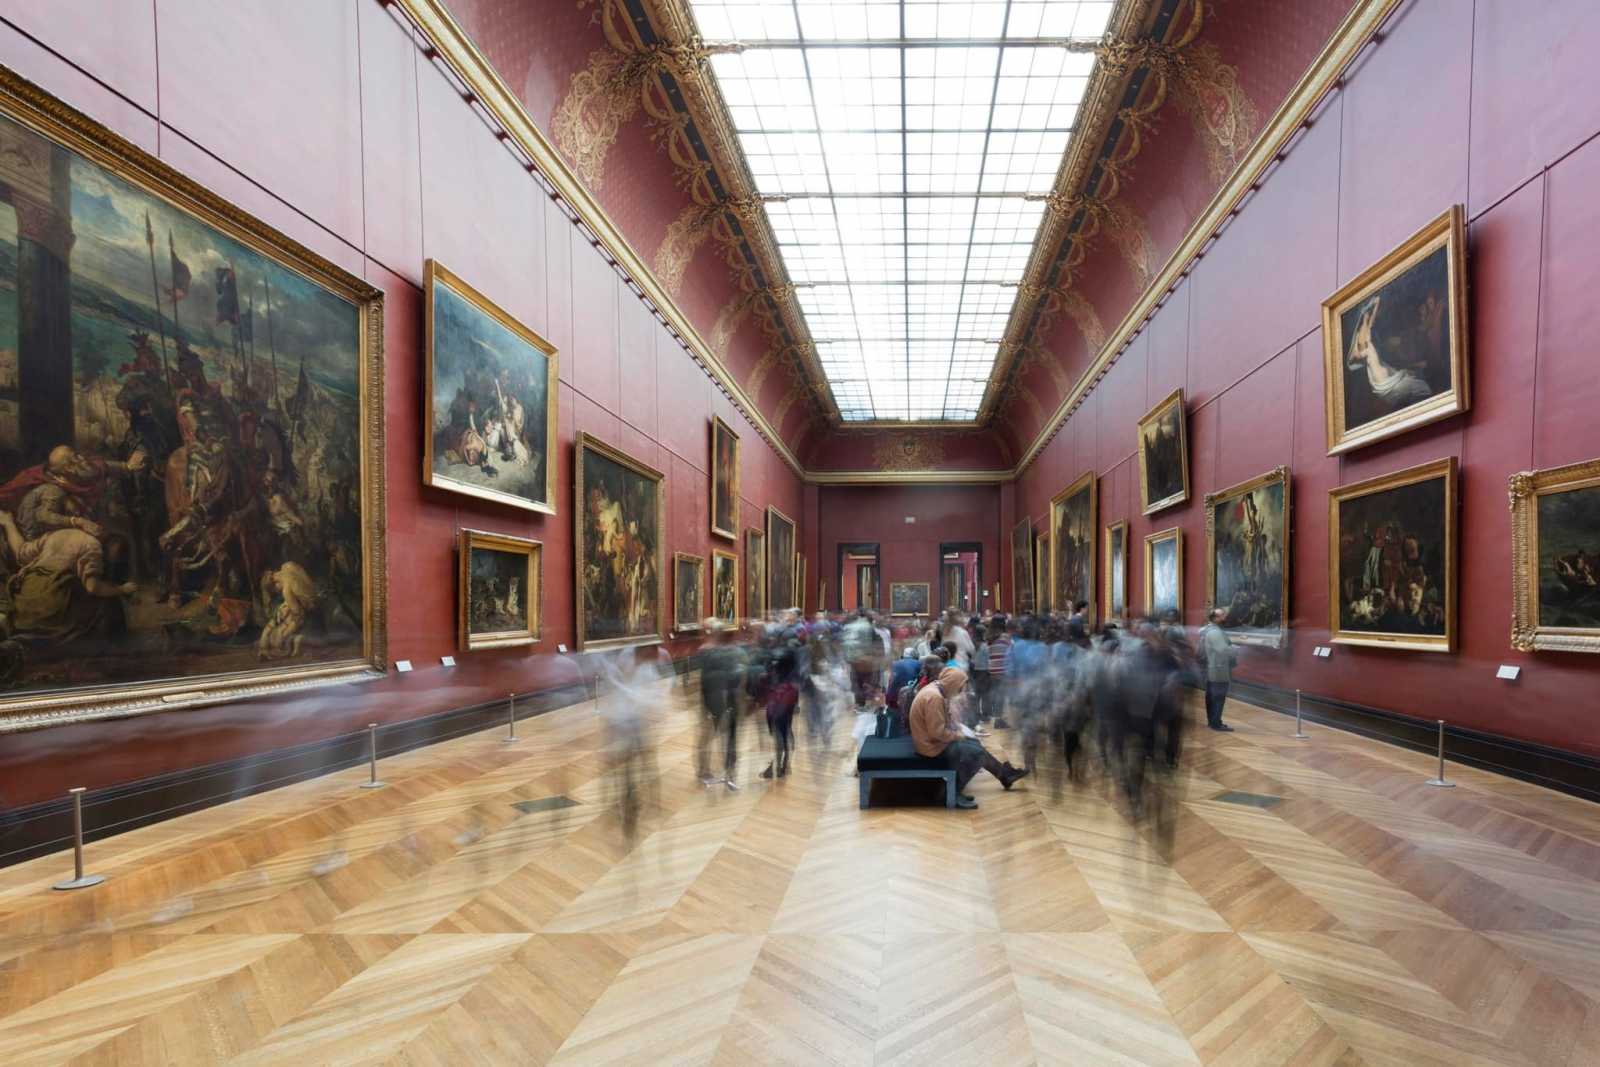 Vasárnap már kinyitott a múzeum | Fotó: Facebook/Musee du Louvre